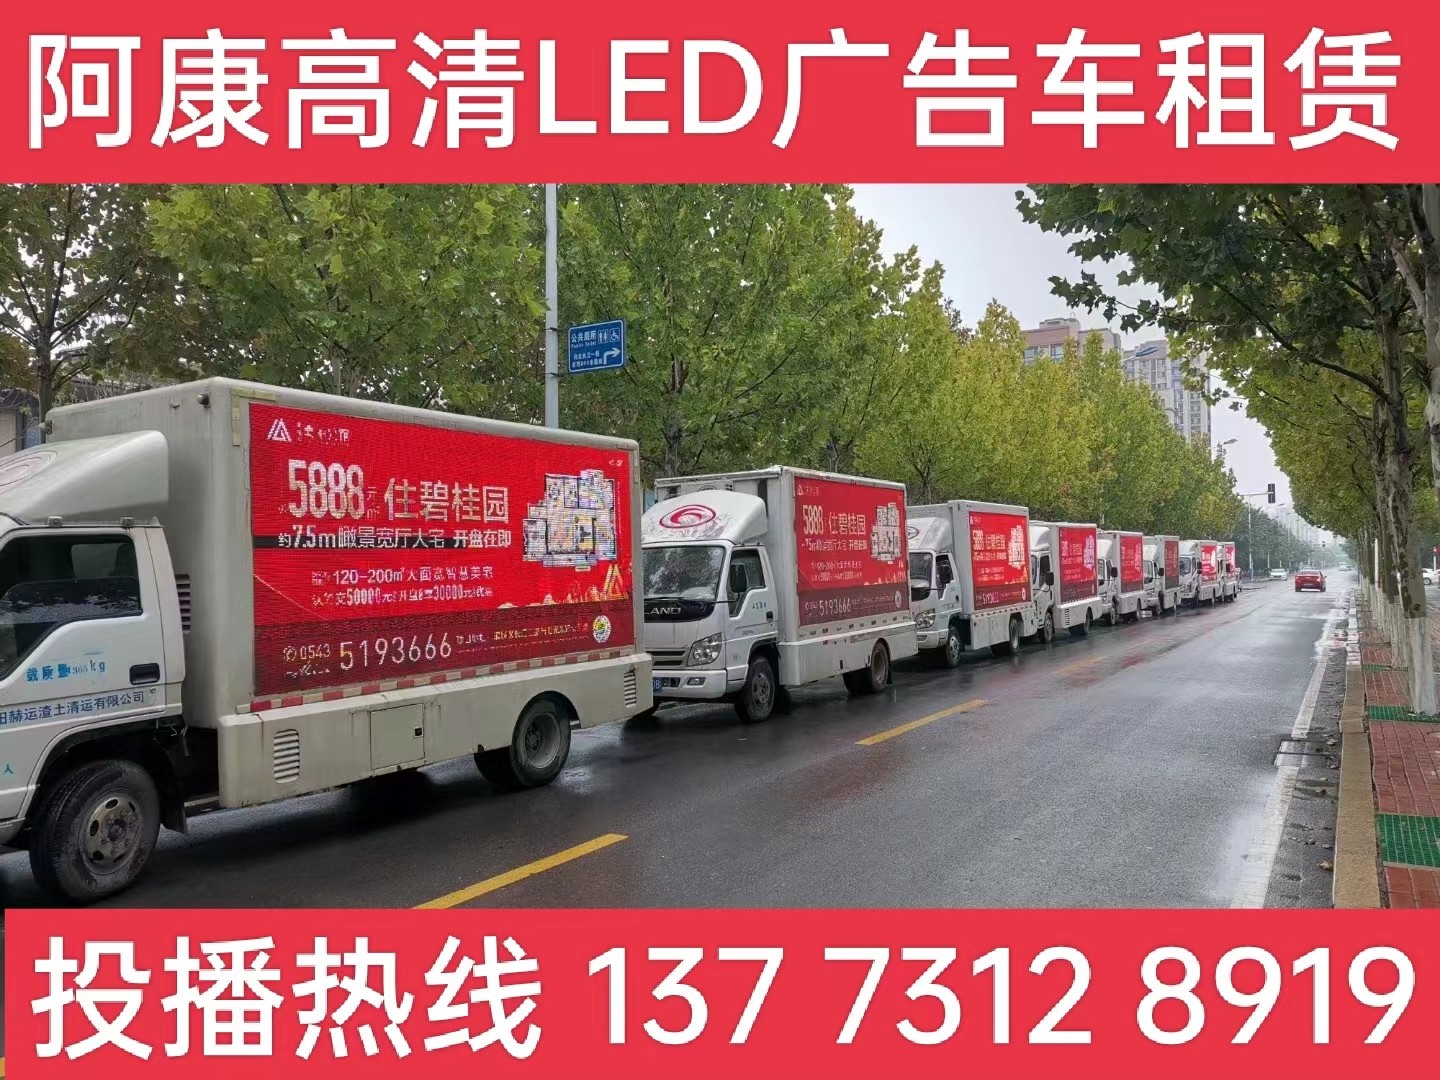 南京宣传车租赁公司-楼盘LED广告车投放